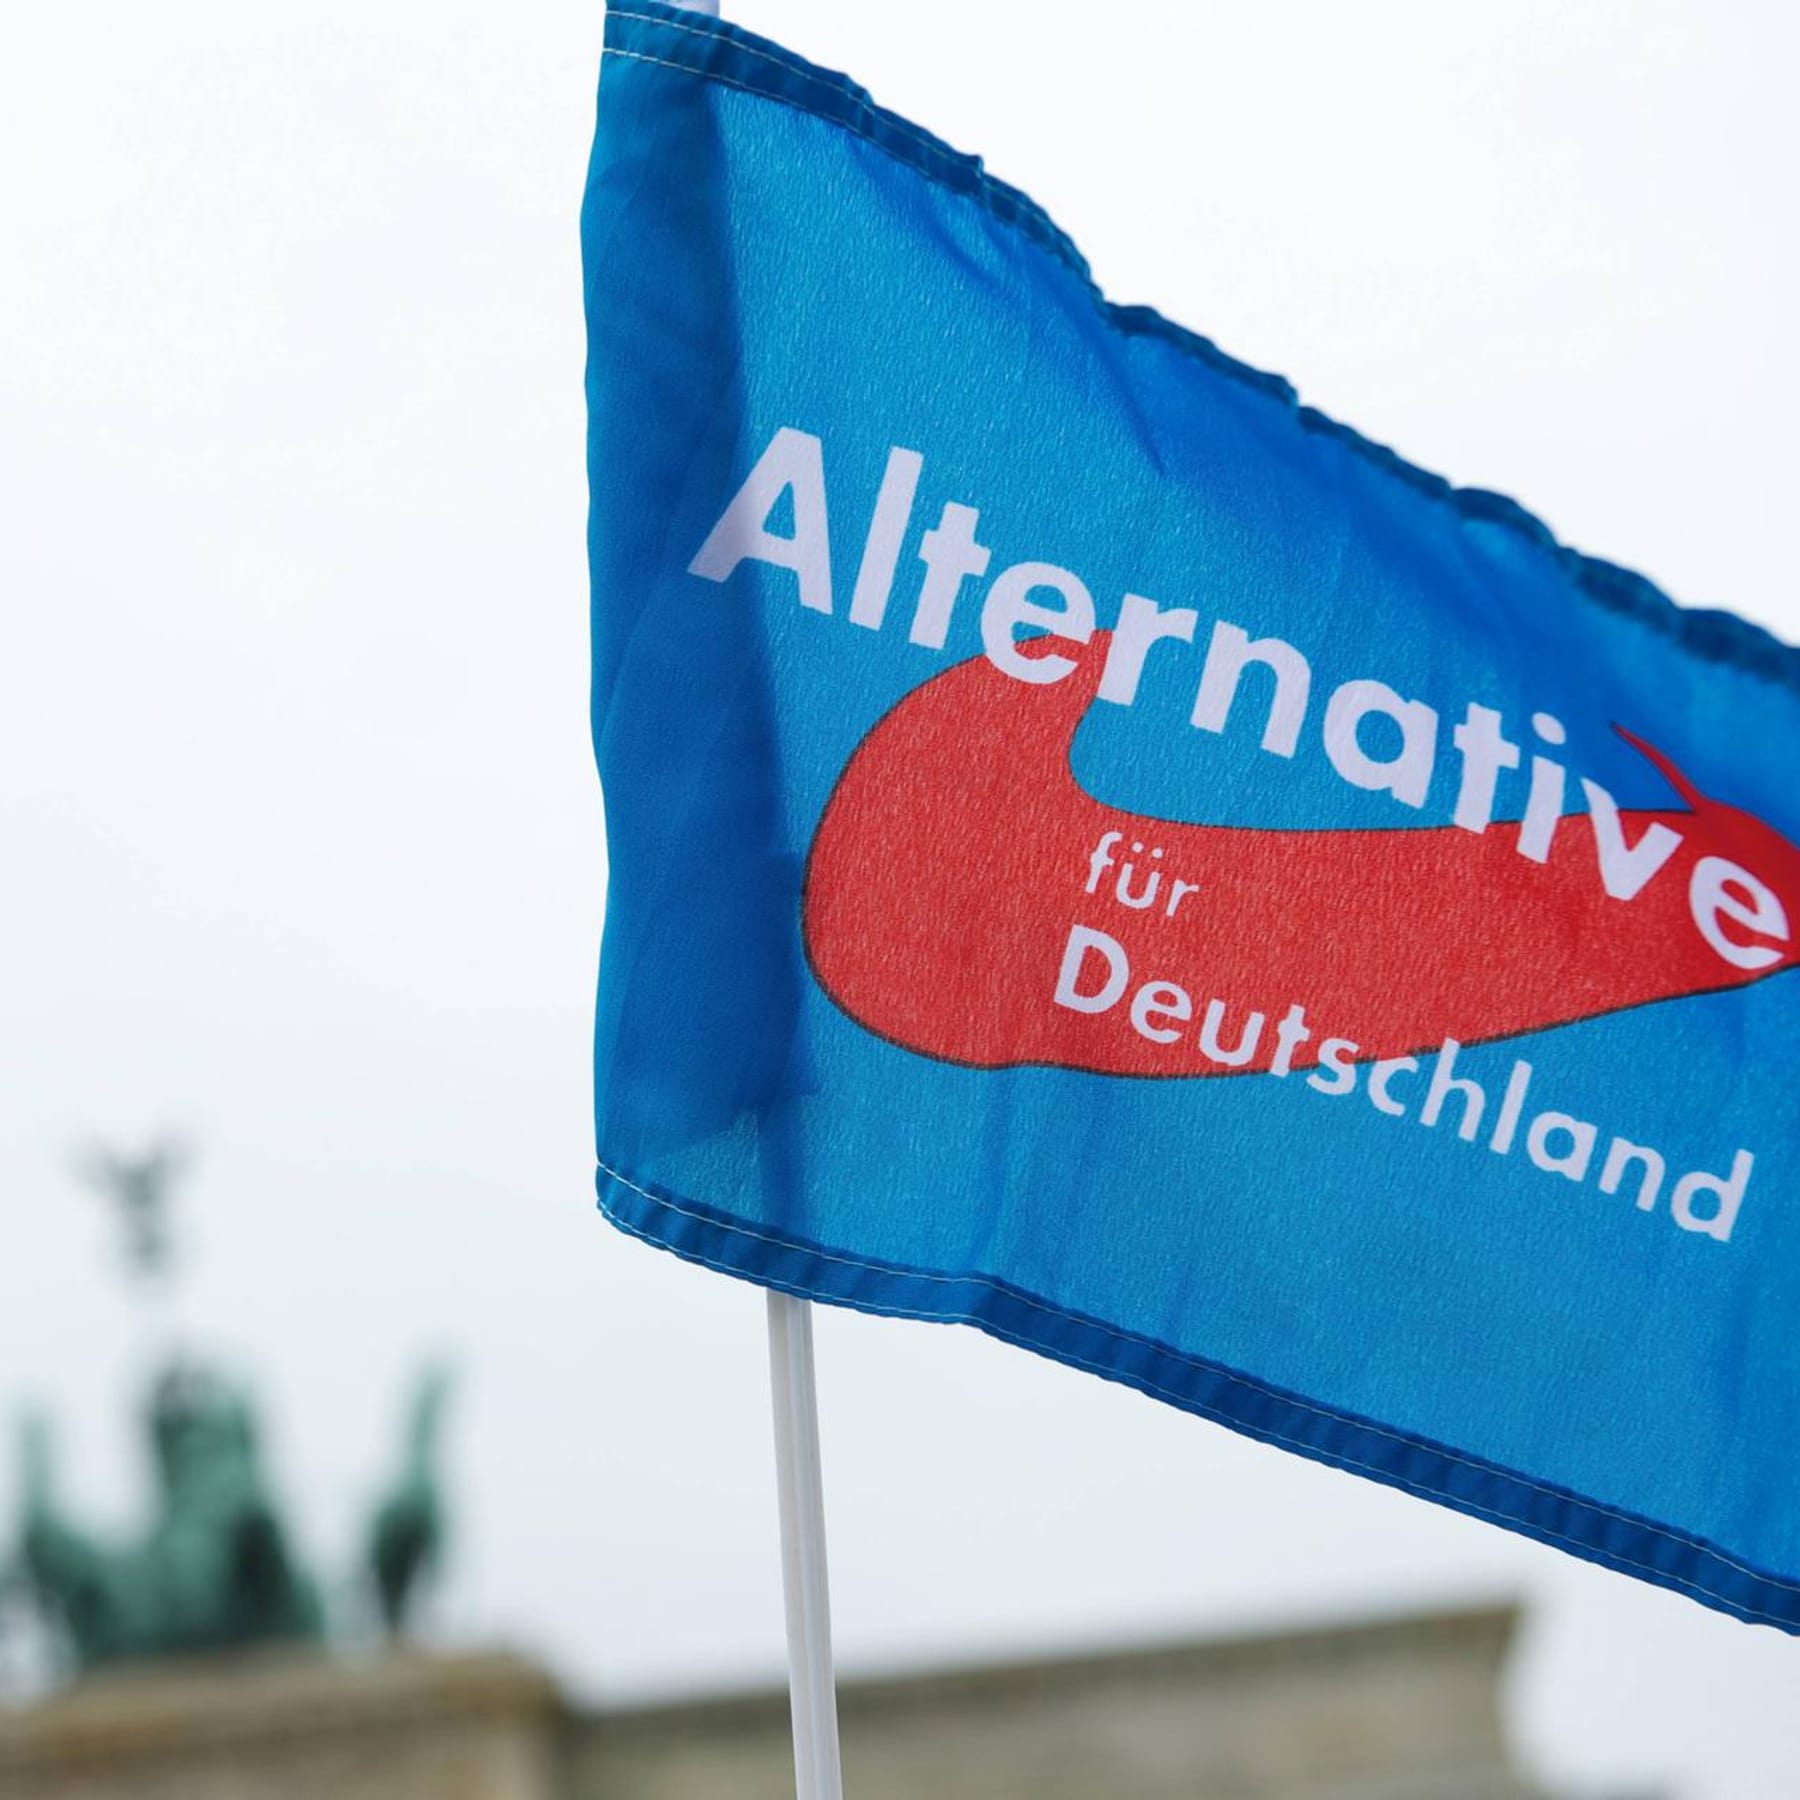 Verfassungsschutz: Berliner Landes-AfD wohl als Verdachtsfall